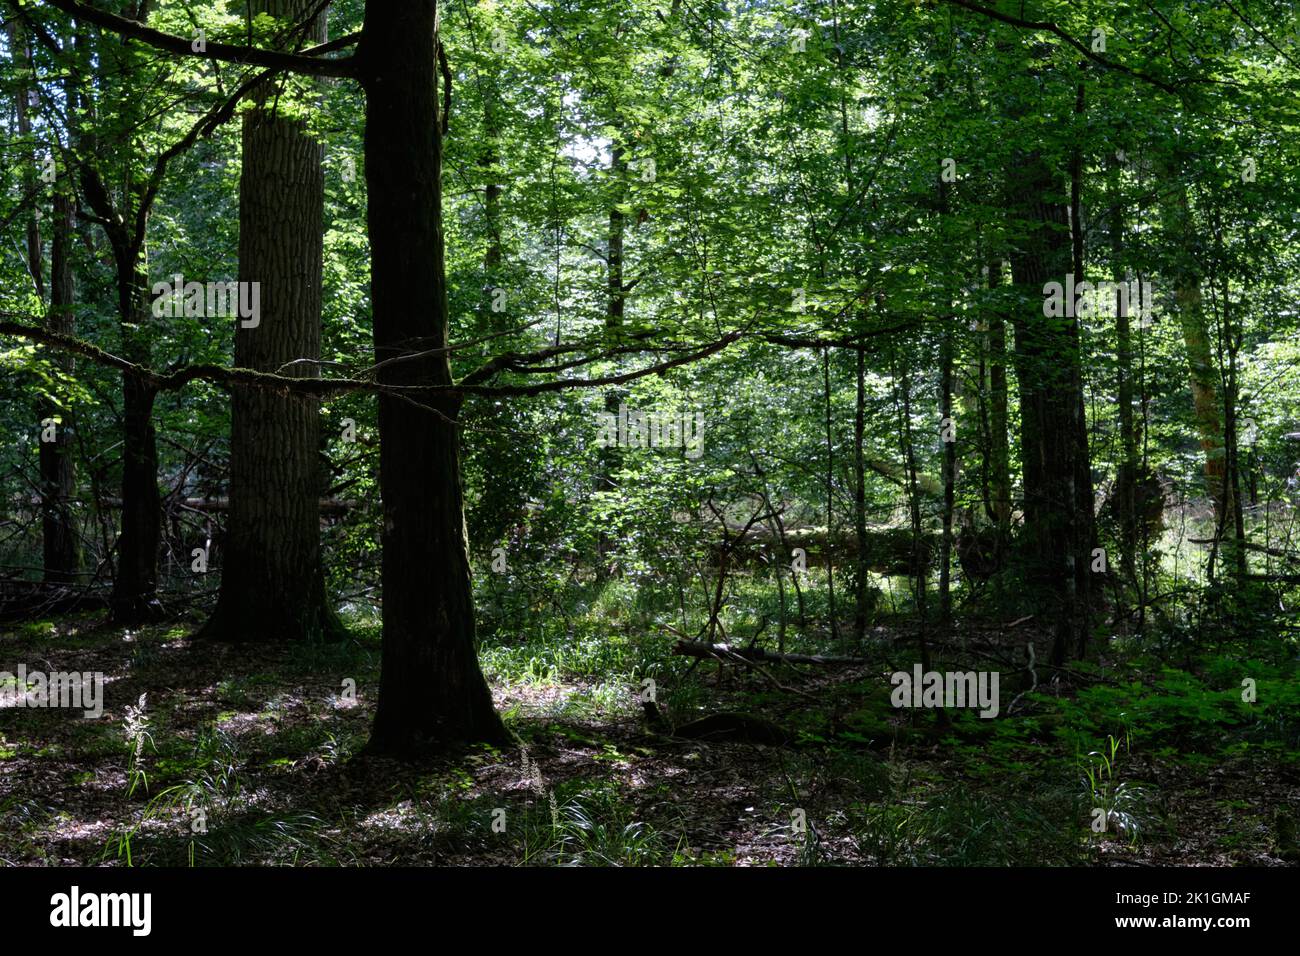 Peuplement d'arbres à feuilles caduques ombragées avec chêne cassé en arrière-plan, forêt de Bialowieza, Pologne, Europe Banque D'Images